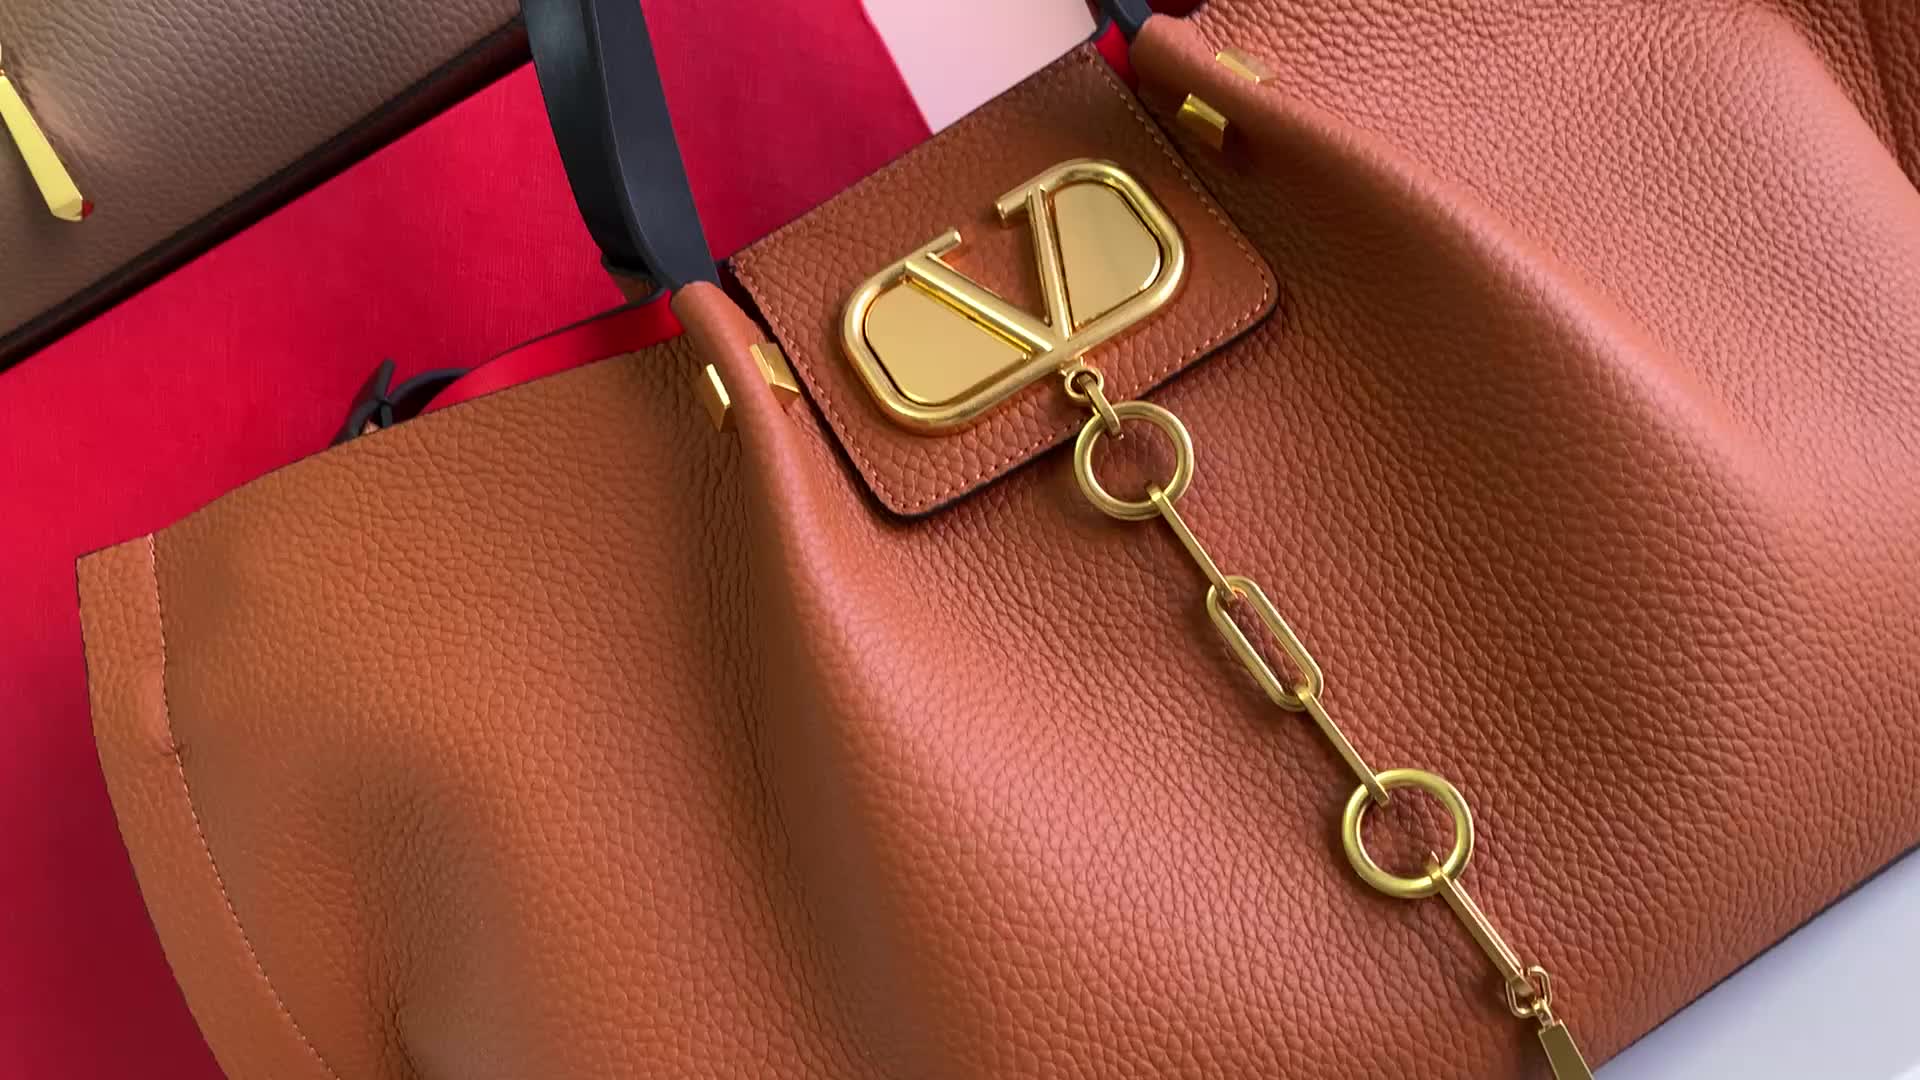 Valentino Bag-(4A)-Handbag- Code: UB5467 $: 119USD